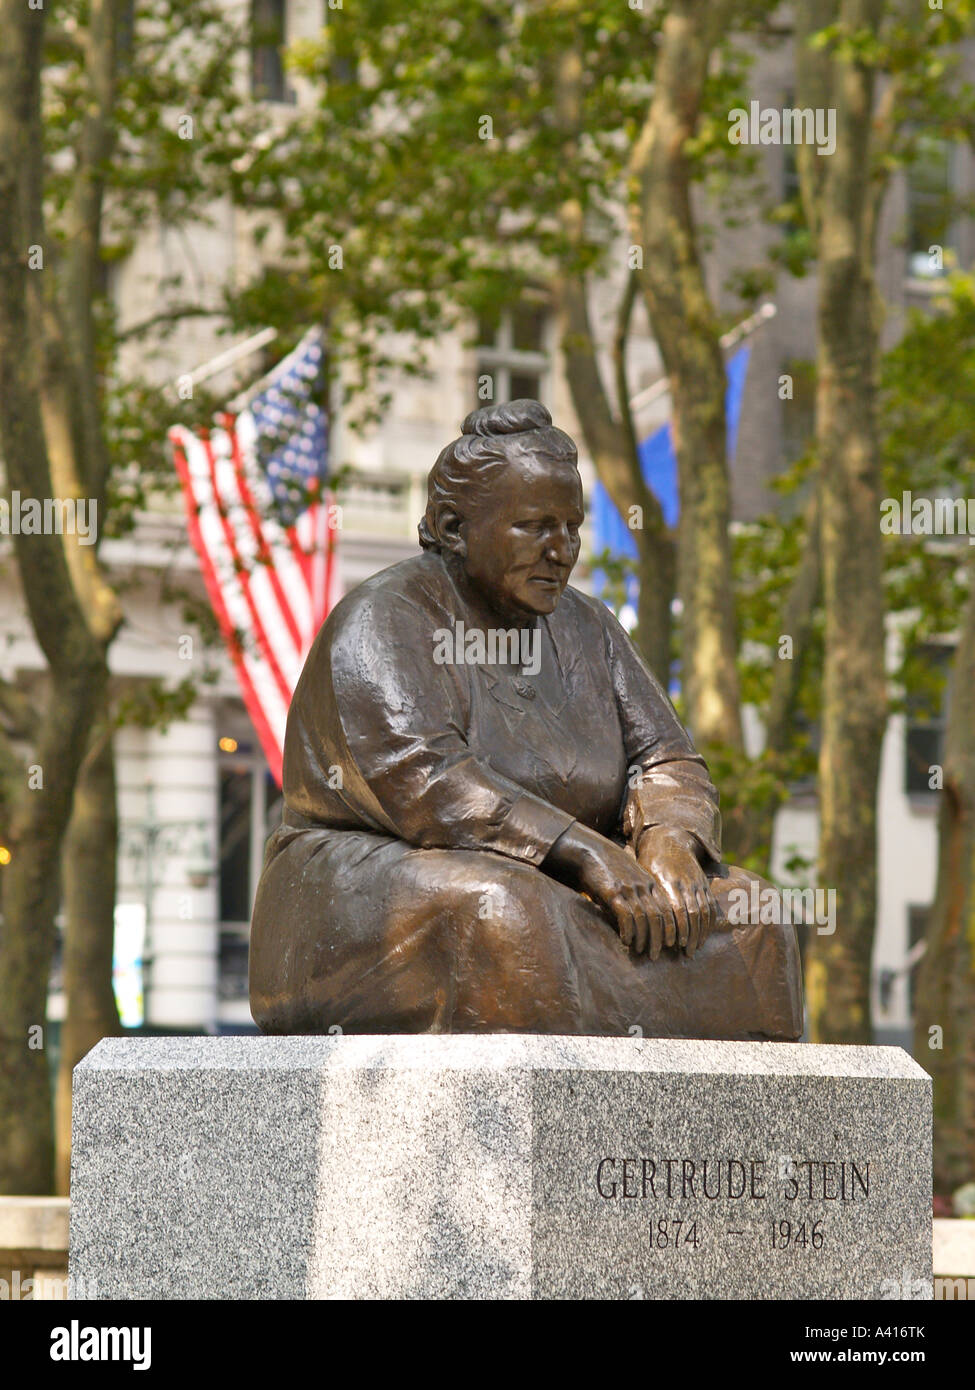 La statue de Gertrude Stein dans Bryant Park Manhattan New York USA Banque D'Images